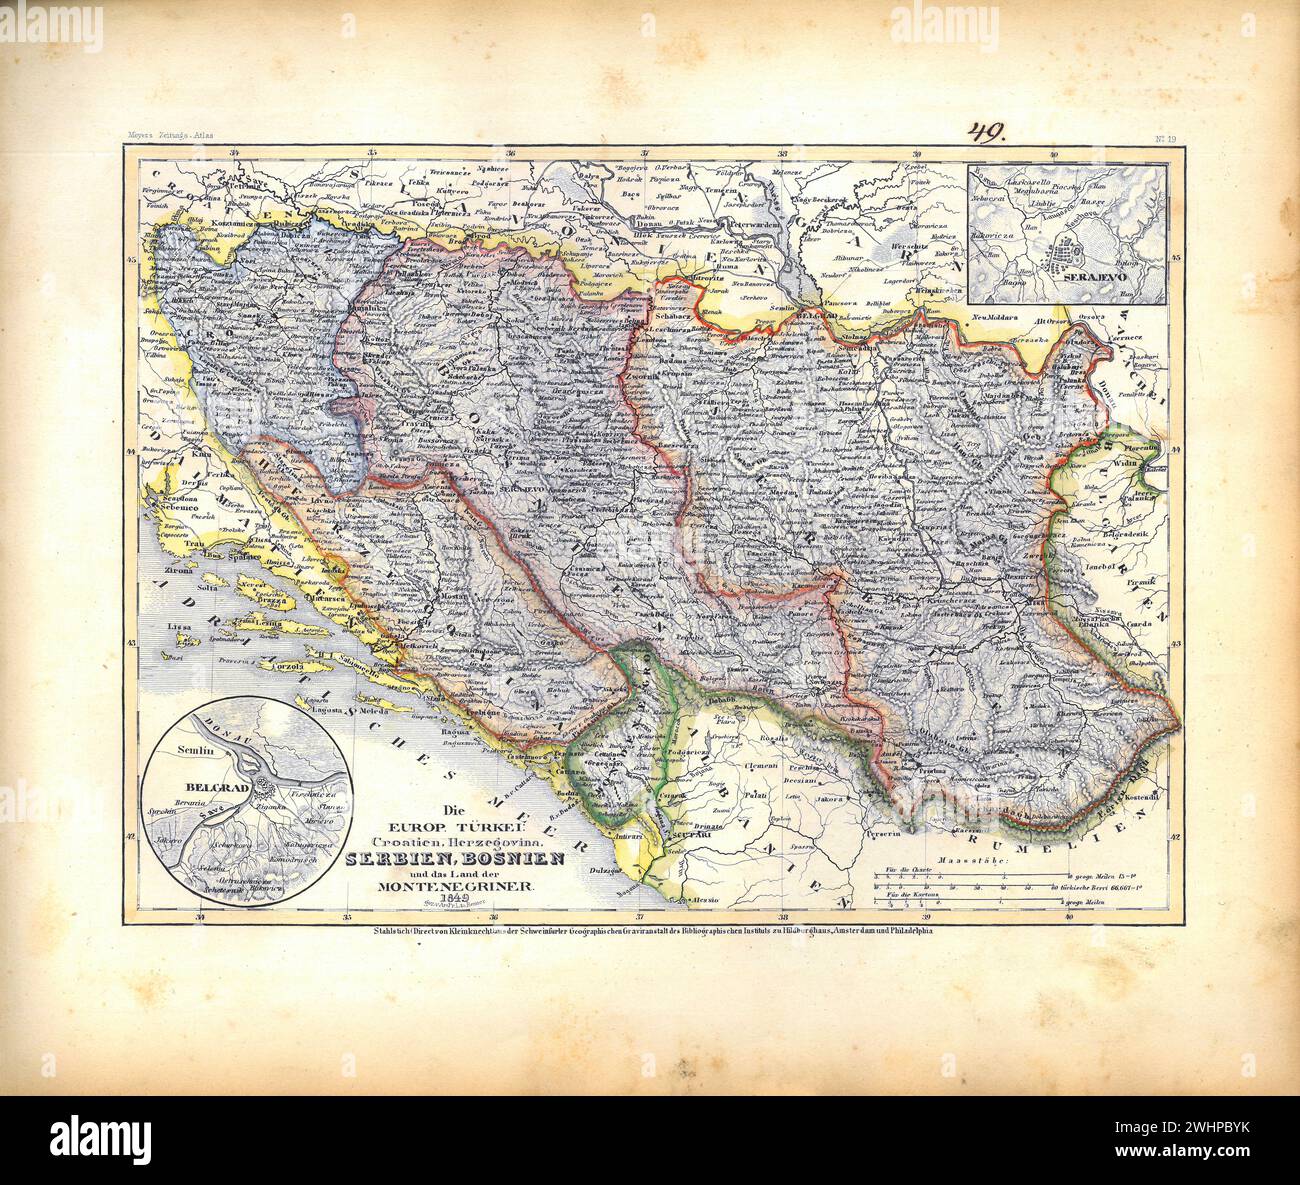 Il giornale di Meyer Atlas 019 - Turchia europea: Croazia, Erzegovina, Serbia, Bosnia e la terra dei montenegrini. 1849 Foto Stock